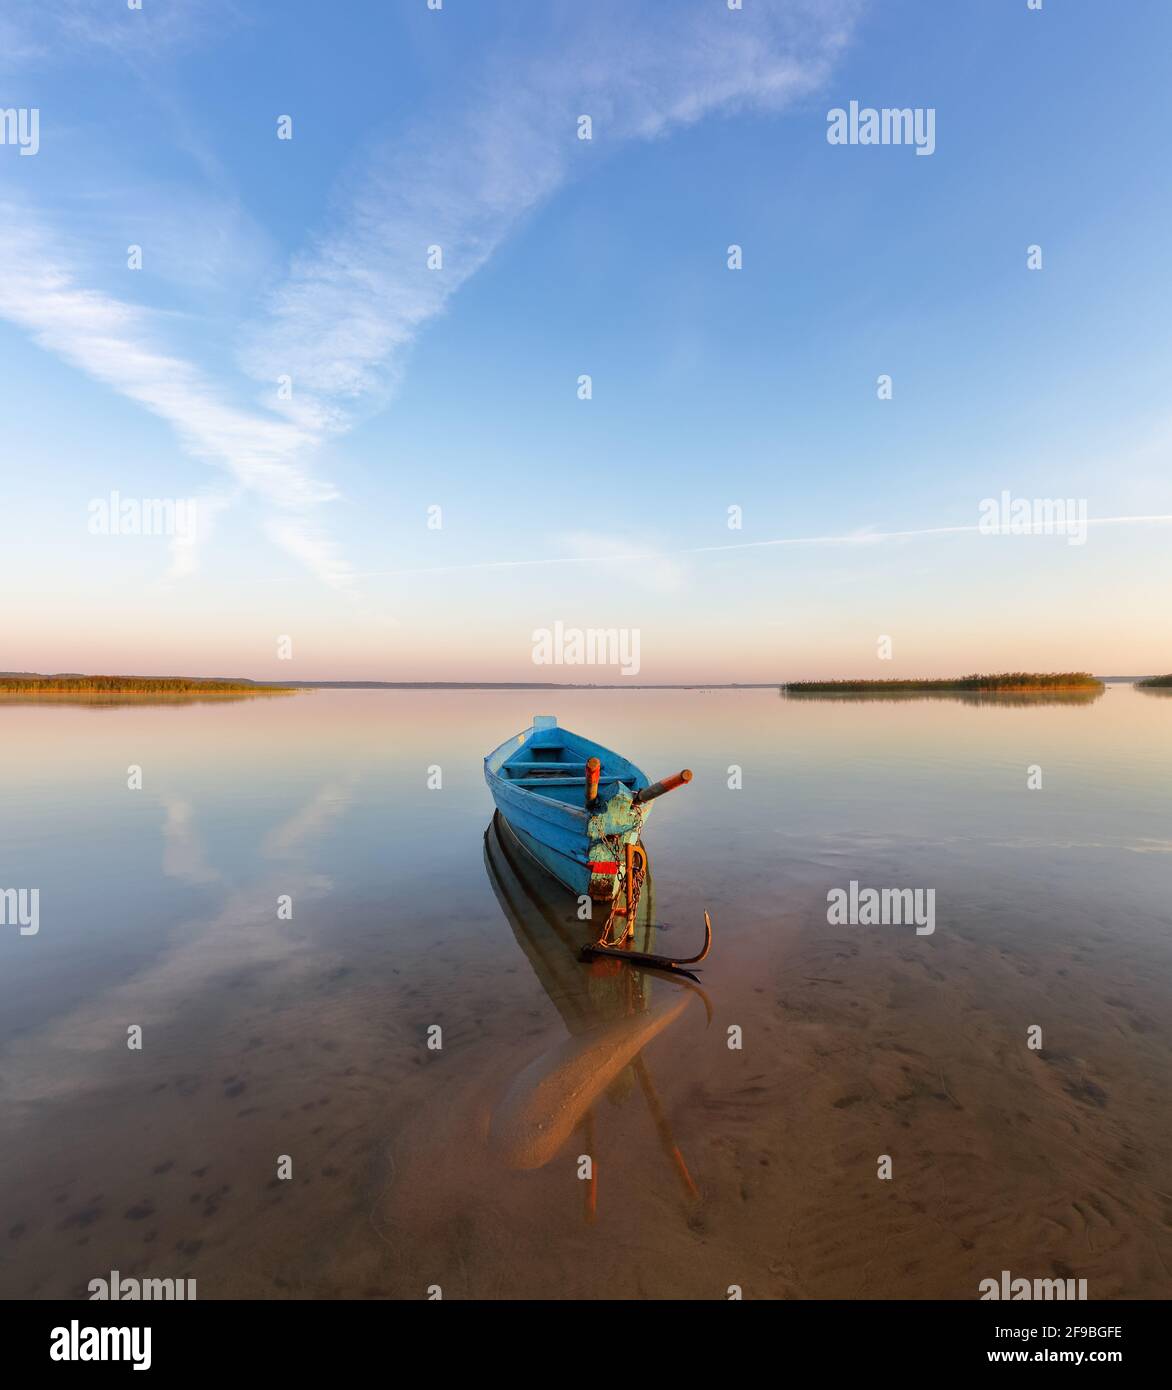 Einsames Boot im ruhigen See. Die Silhouette spiegelt sich auf dem Wasser. Schöner Sommertag. Unglaublicher Sonnenaufgang. Blauer Himmel mit Wolken. Lage, Hotel Svity Stockfoto